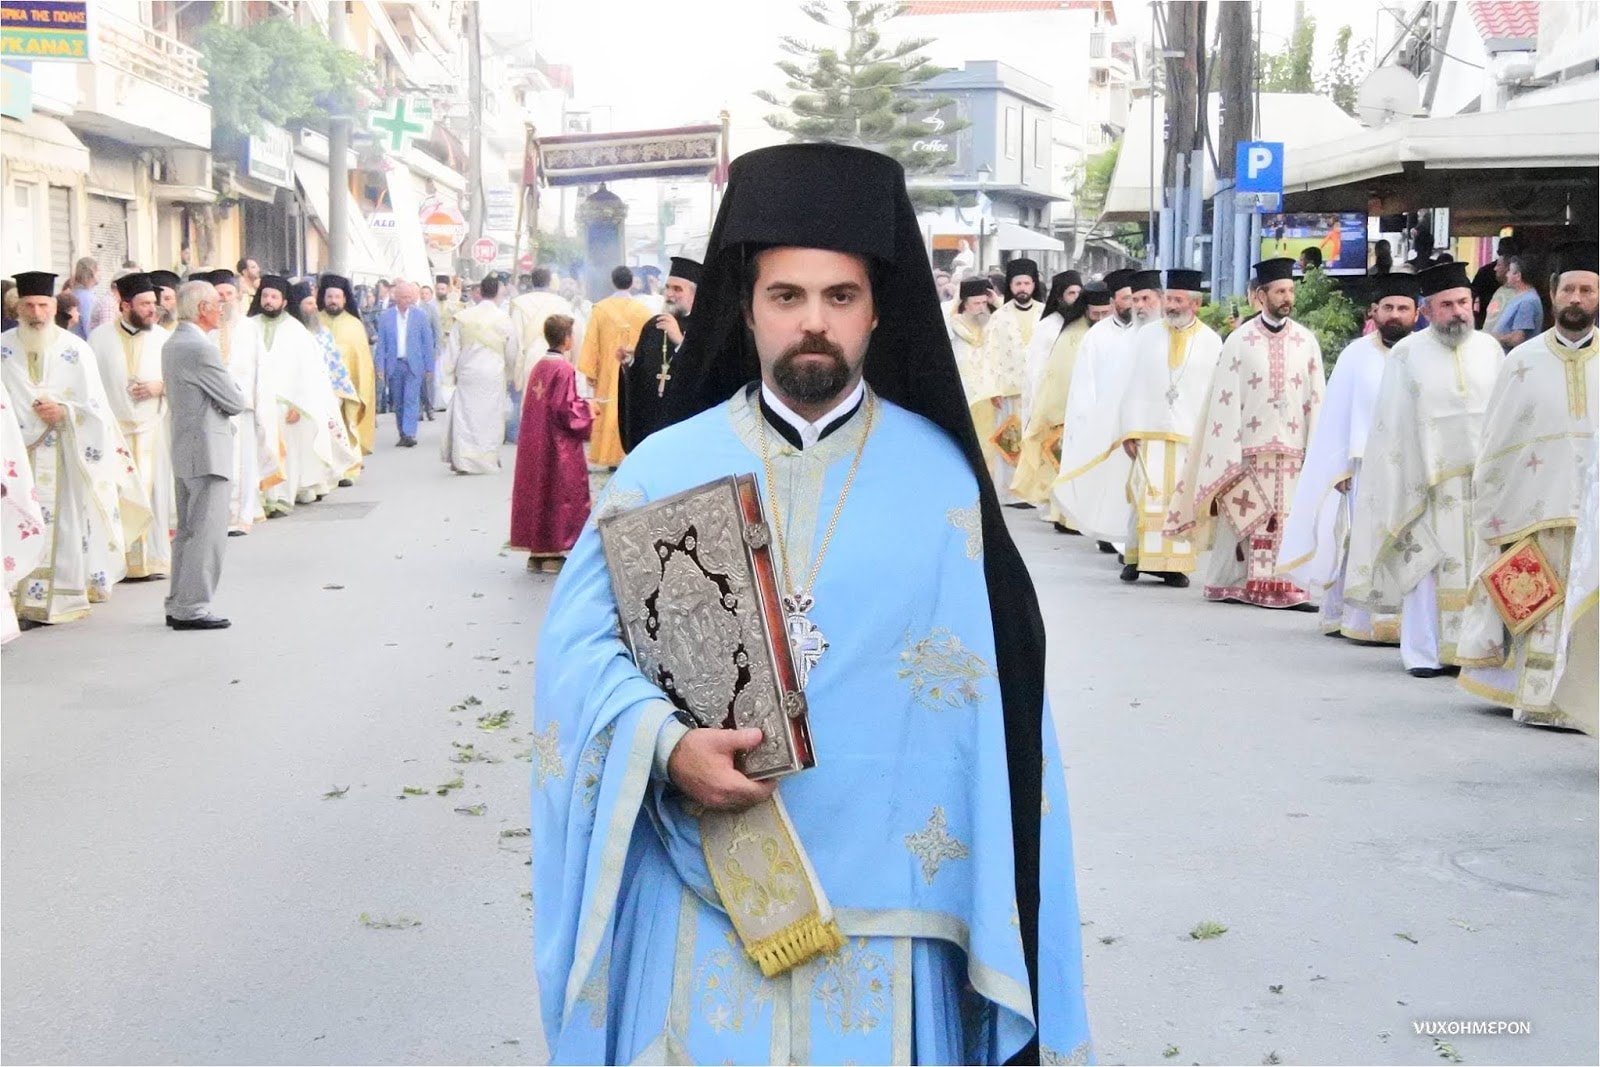 Le Saint-Synode du Patriarcat œcuménique a élu un nouvel évêque vicaire pour la France